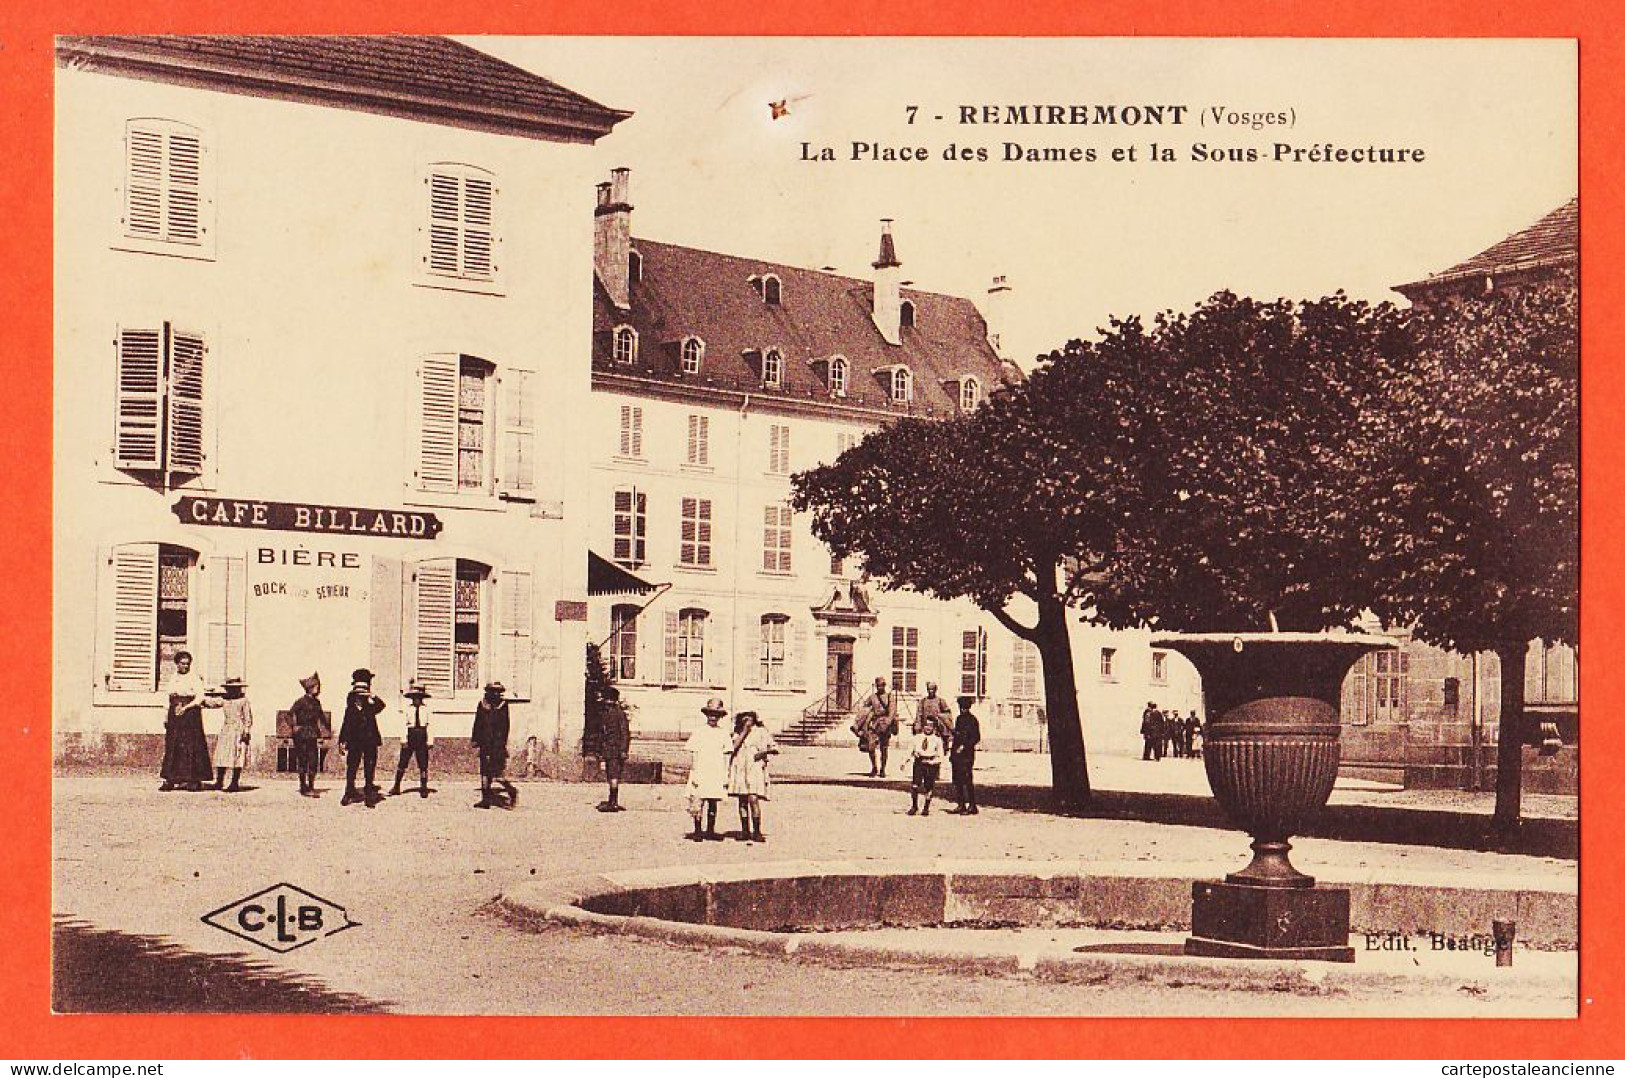 06088 / REMIREMONT 88-Vosges CAFE-BILLARD Place Des DAMES Et La Sous-Préfecture 1910s BEAUGE LARDIER C-L-B 7 - Remiremont